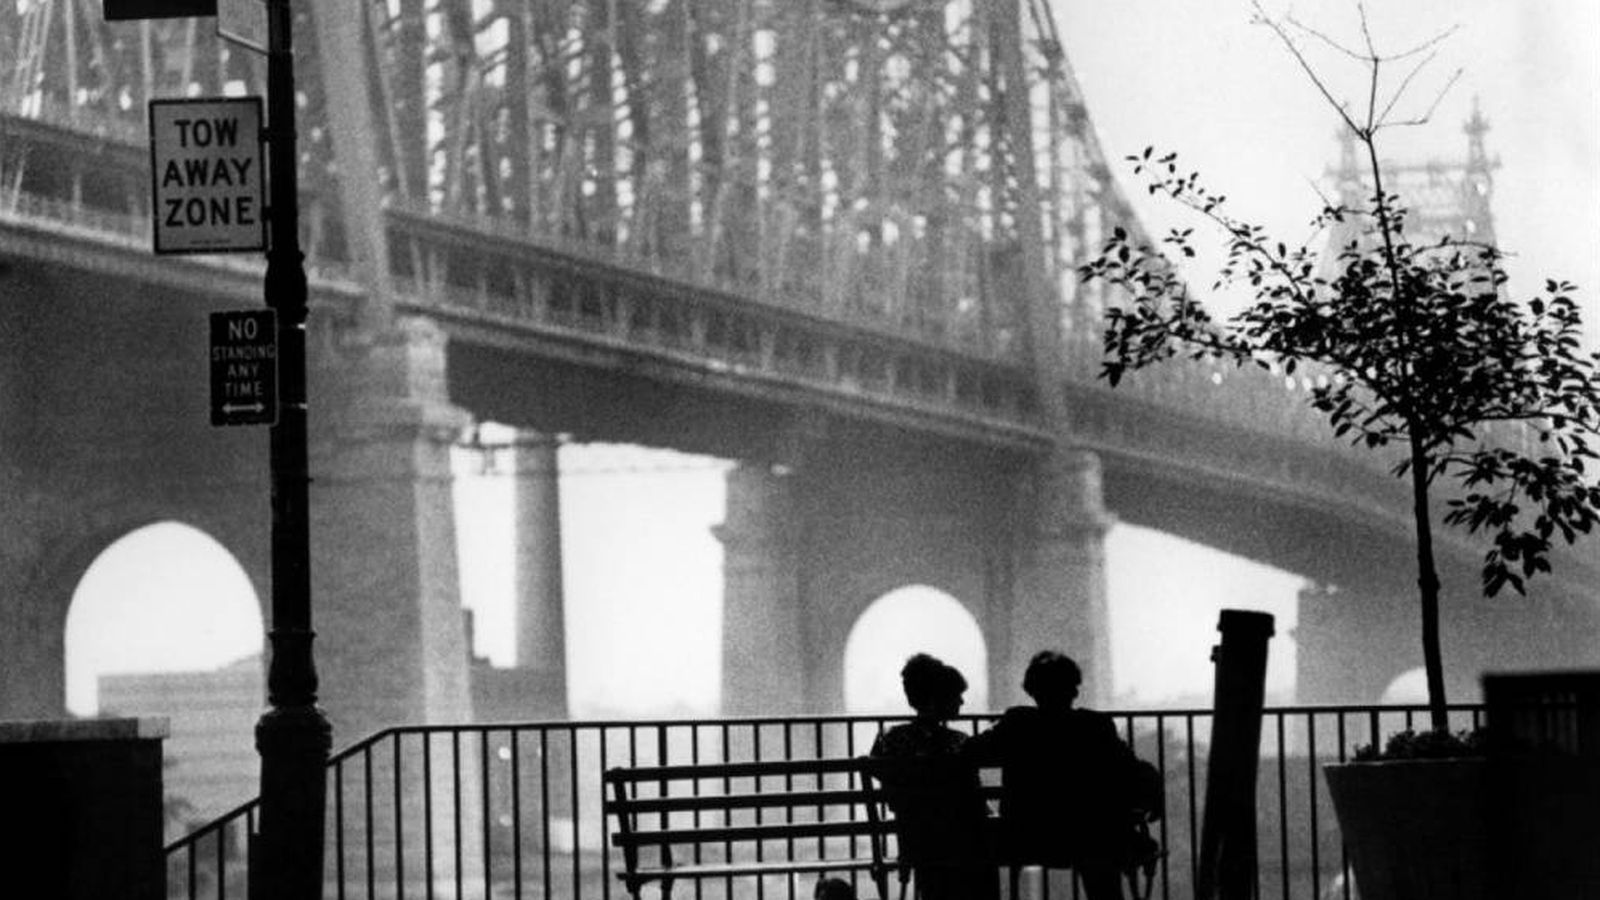 Foto: Ellos dos adoraban que les vieran enamorados en una ciudad así. (Fotograma de 'Manhattan', de Woody Allen)